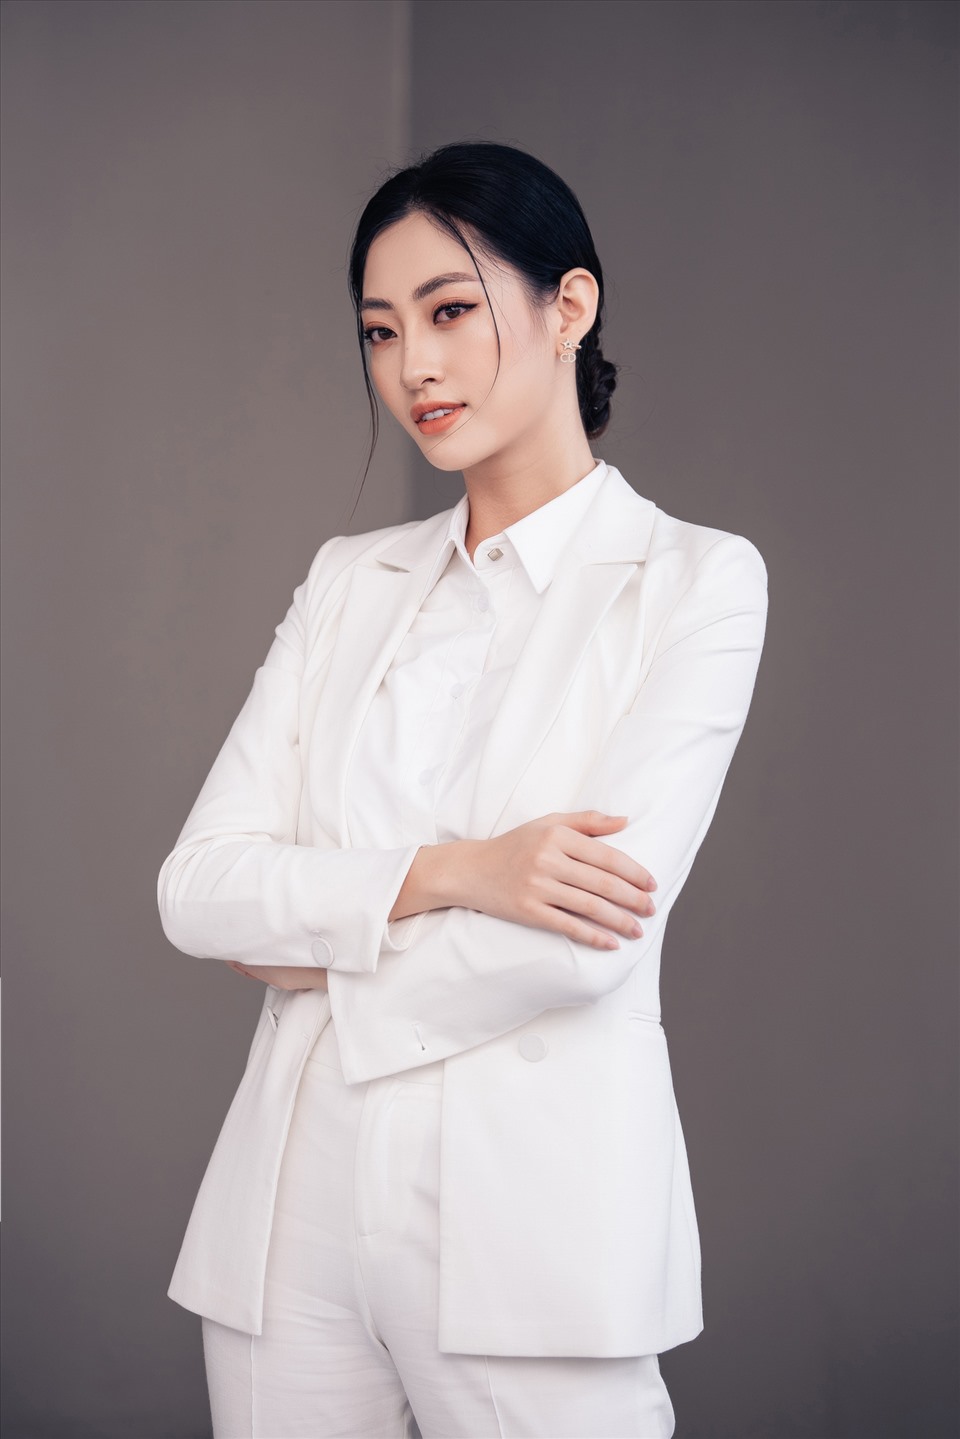 Mặc dù không đạt được ước mơ nhưng hiện tại Hoa hậu Lương Thùy Linh đã là cái tên sáng giá trong làng mẫu Việt với nhiều lần đảm nhiệm vị trí Vedette, Firs Face cho các nhà thiết kế hàng đầu Việt Nam. Trong tương lai, cô cũng mong sẽ được thử sức nhiều hơn nữa tại các lĩnh vực khác. Ảnh: NVCC.